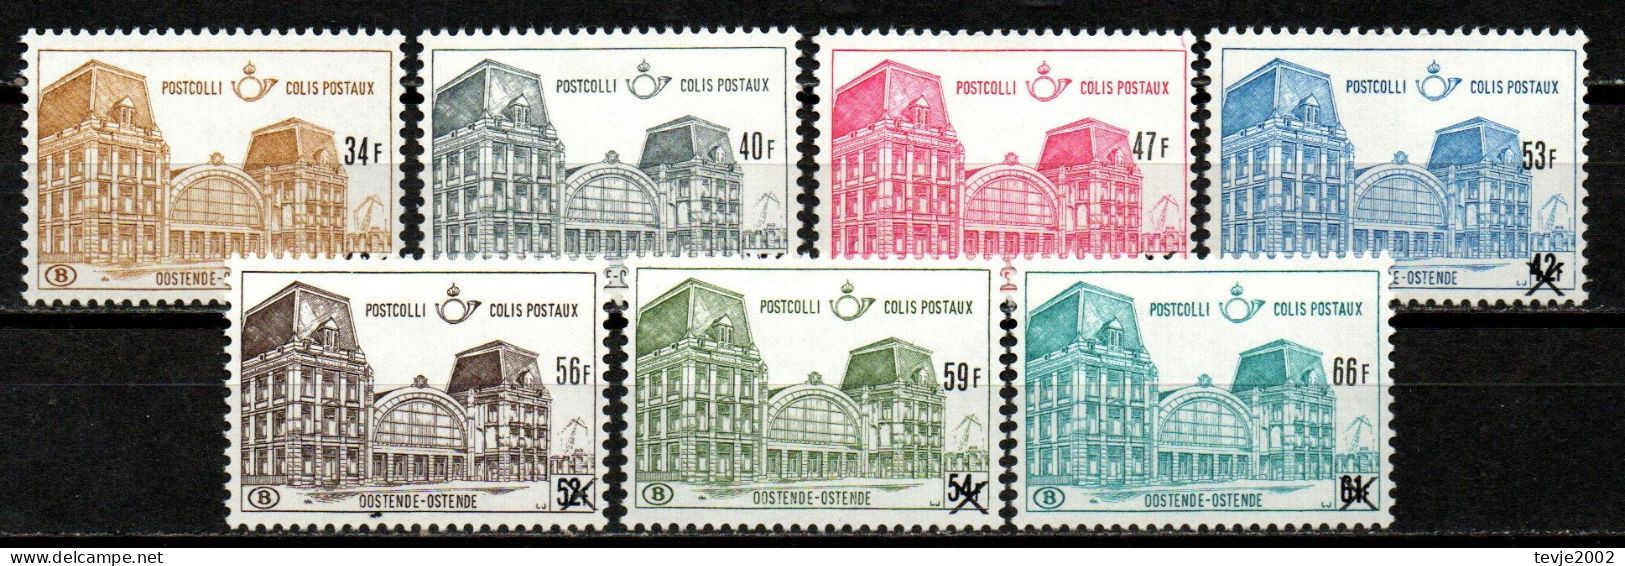 Belgien 1971 - Postpaketmarken Mi.Nr. 76 - 82 - Postfrisch MNH - Mint